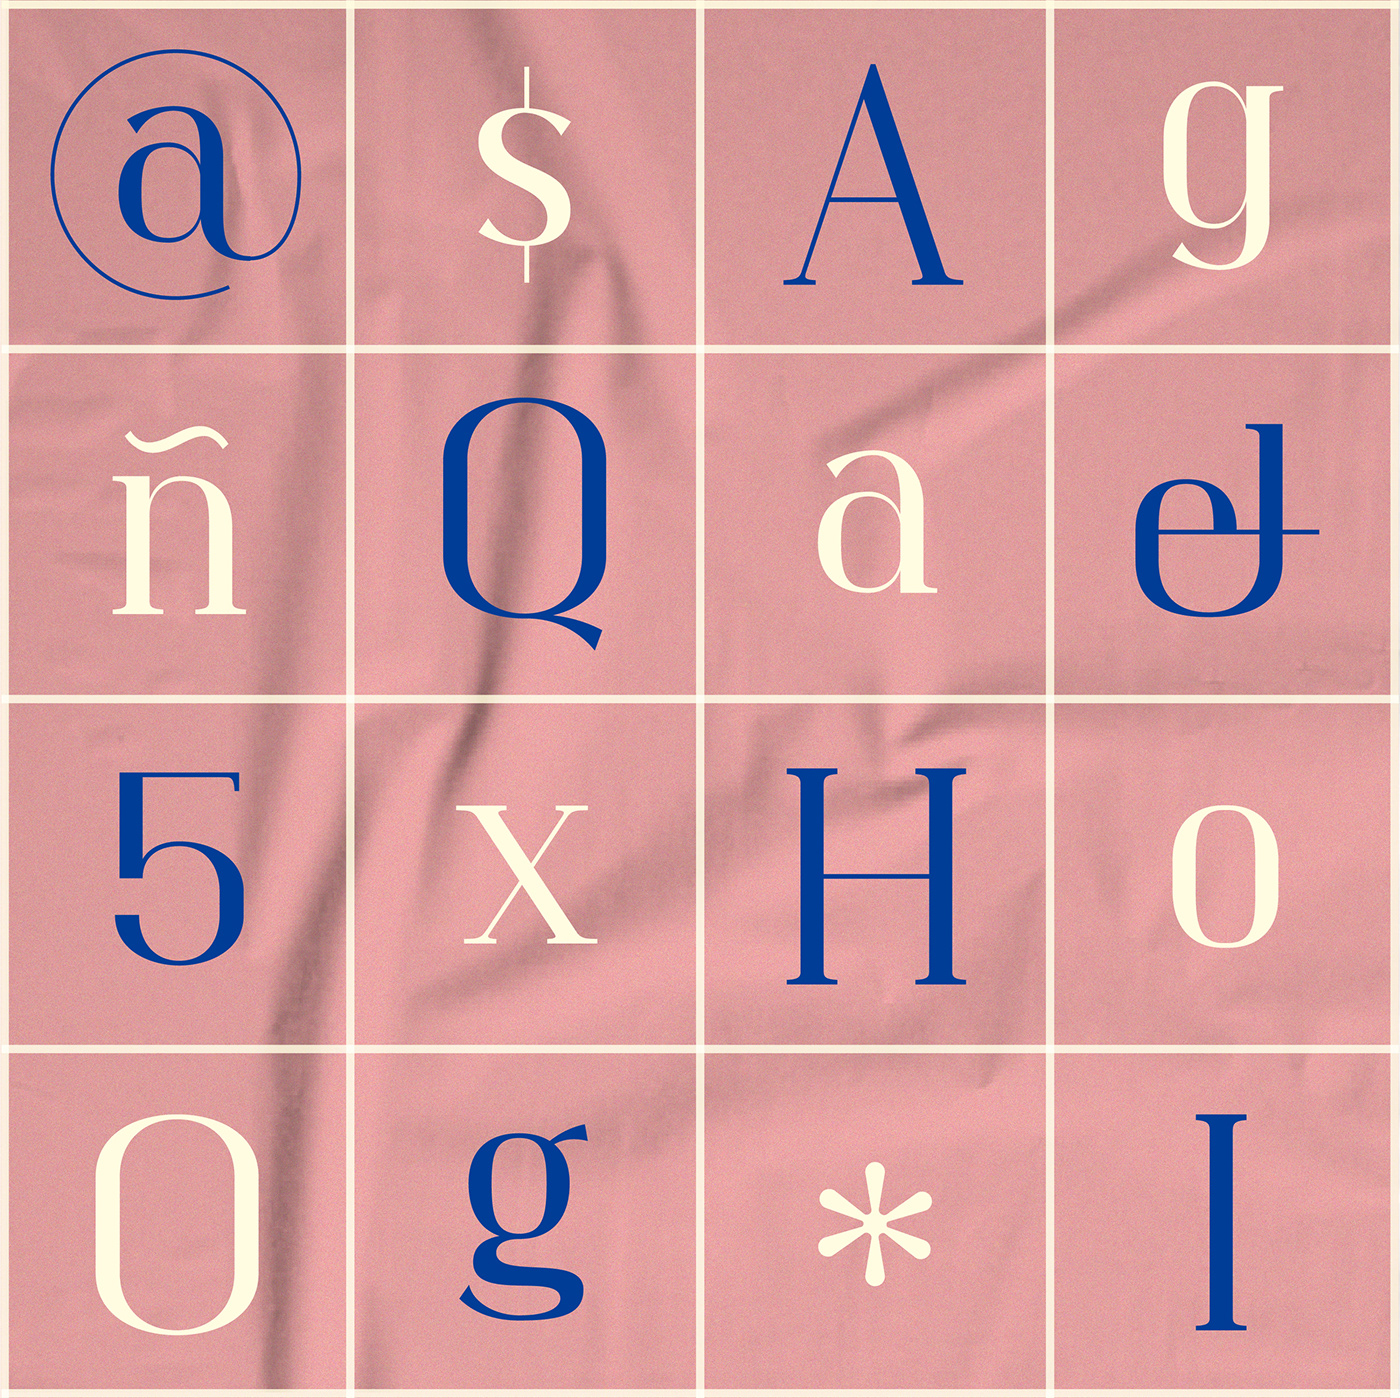 design dieño editorial design  graphic design  serif type type design Typeface typeface design typography  